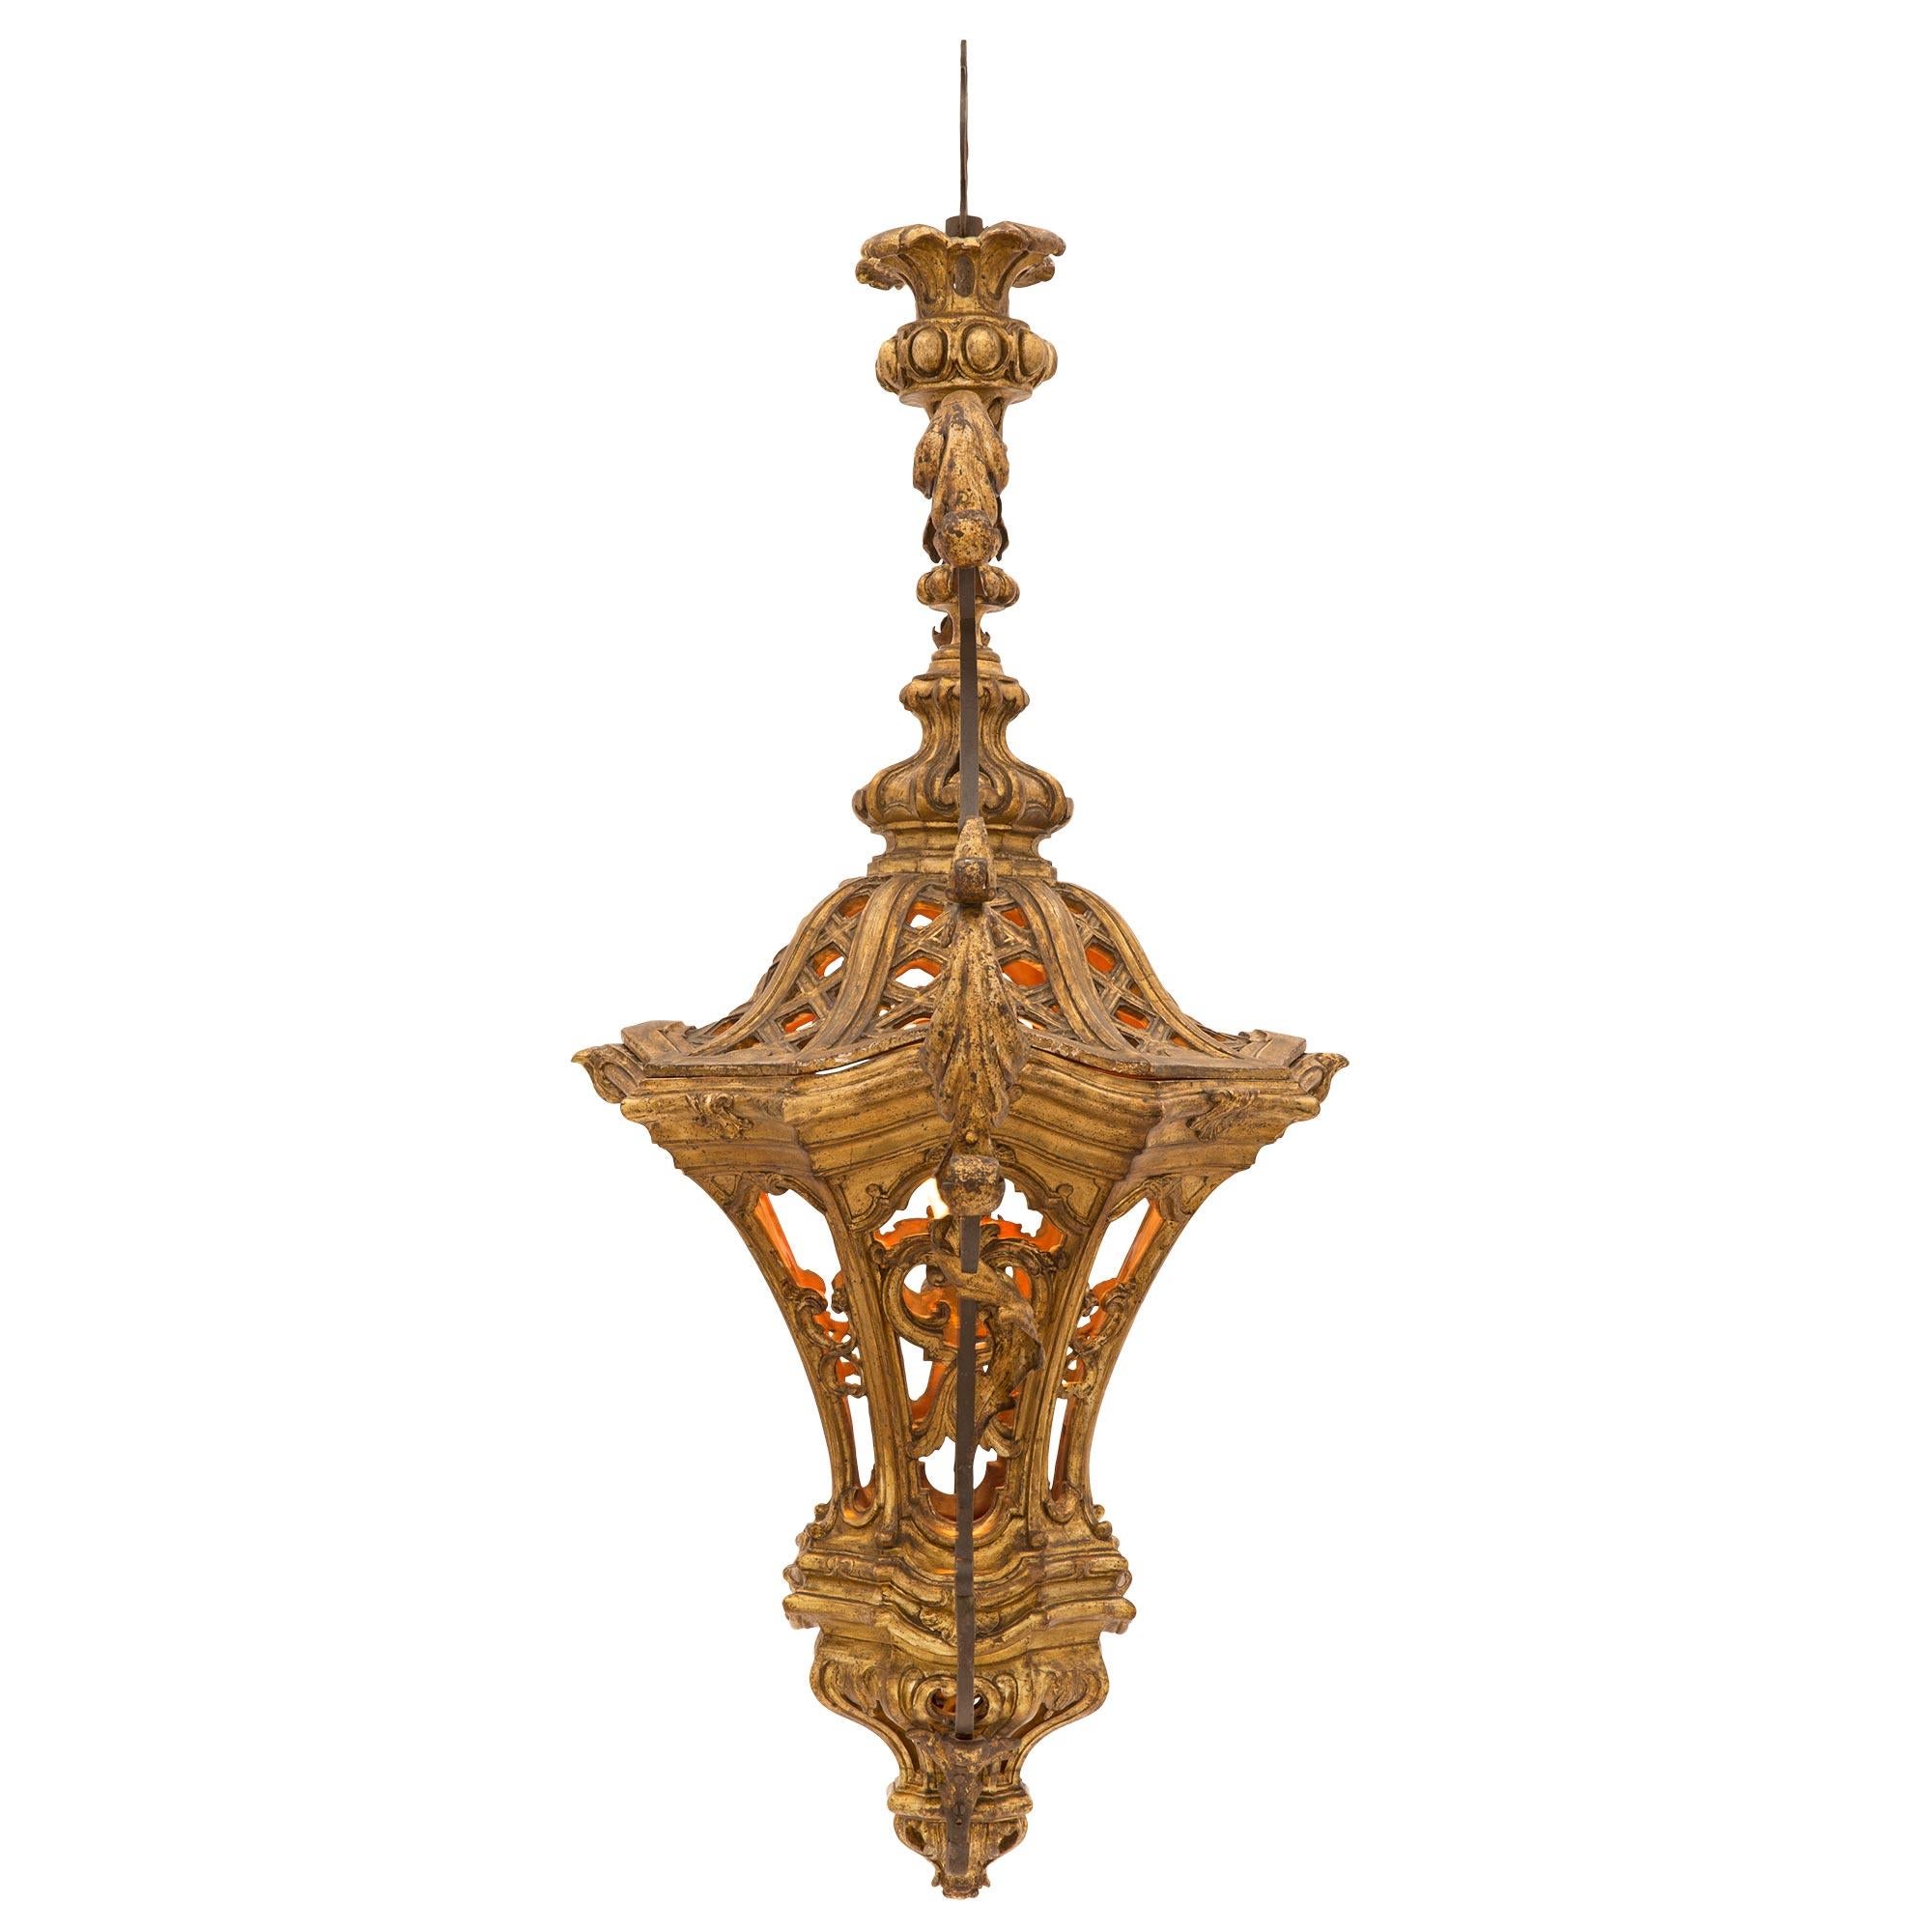 Une exquise et très unique lanterne italienne vénitienne du 18ème siècle en métal doré et fer forgé. La lanterne est centrée par un charmant fleuron richement sculpté sous l'impressionnant et très décoratif corps percé avec d'étonnants motifs